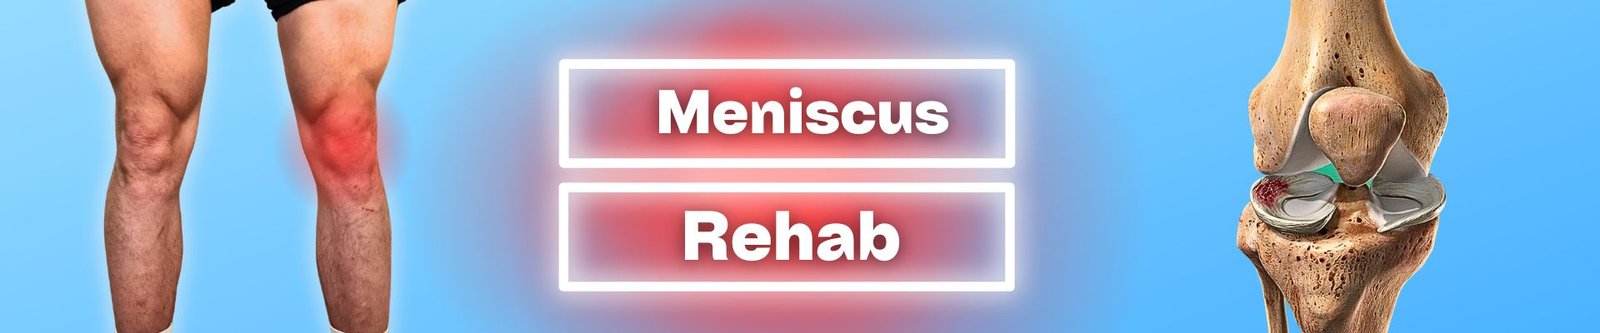 Meniscus rehab